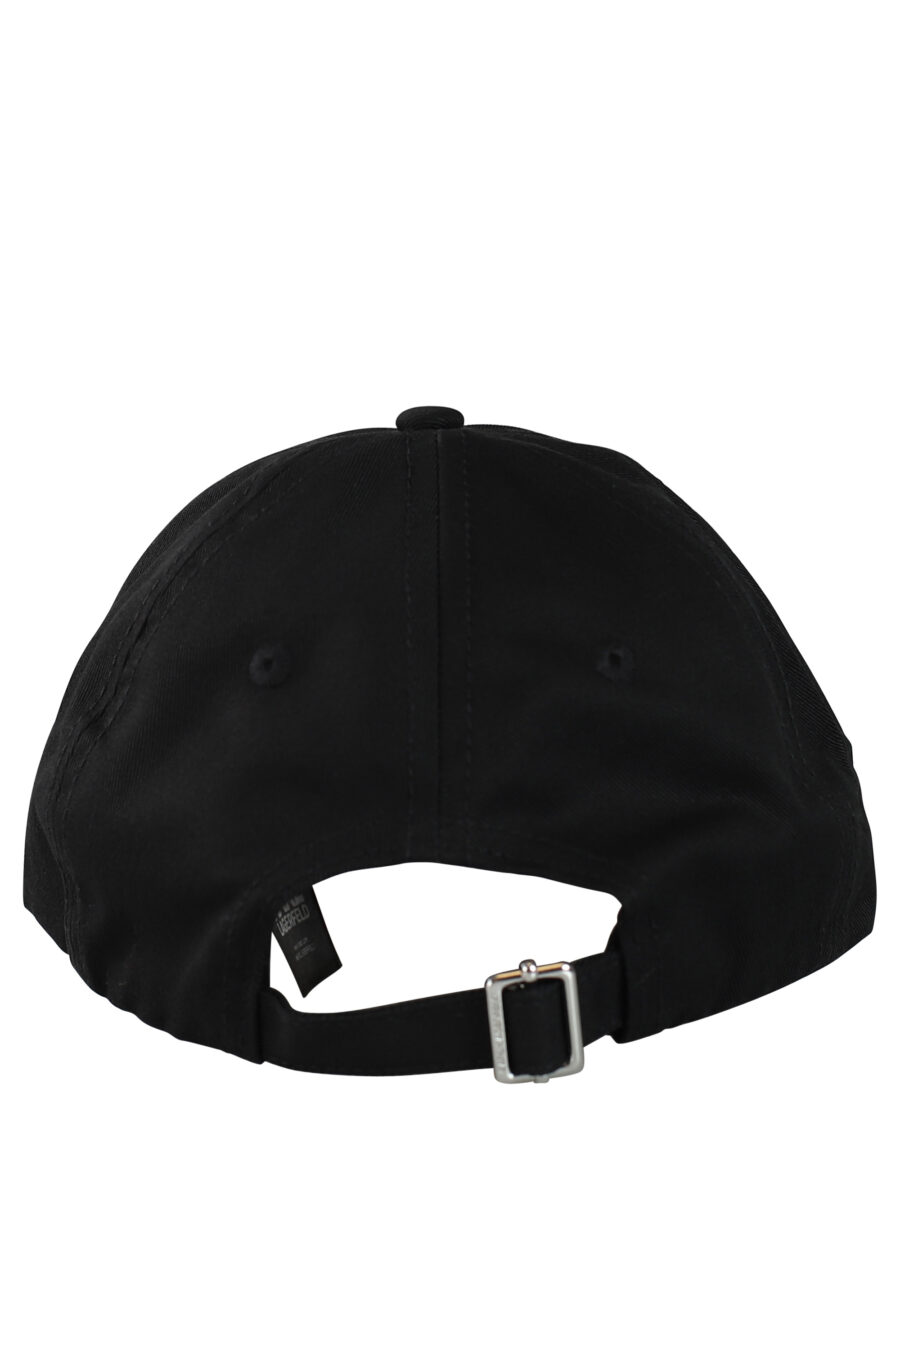 Schwarze Mütze mit Logo auf dem Schirm "essential" - 8720744104872 2